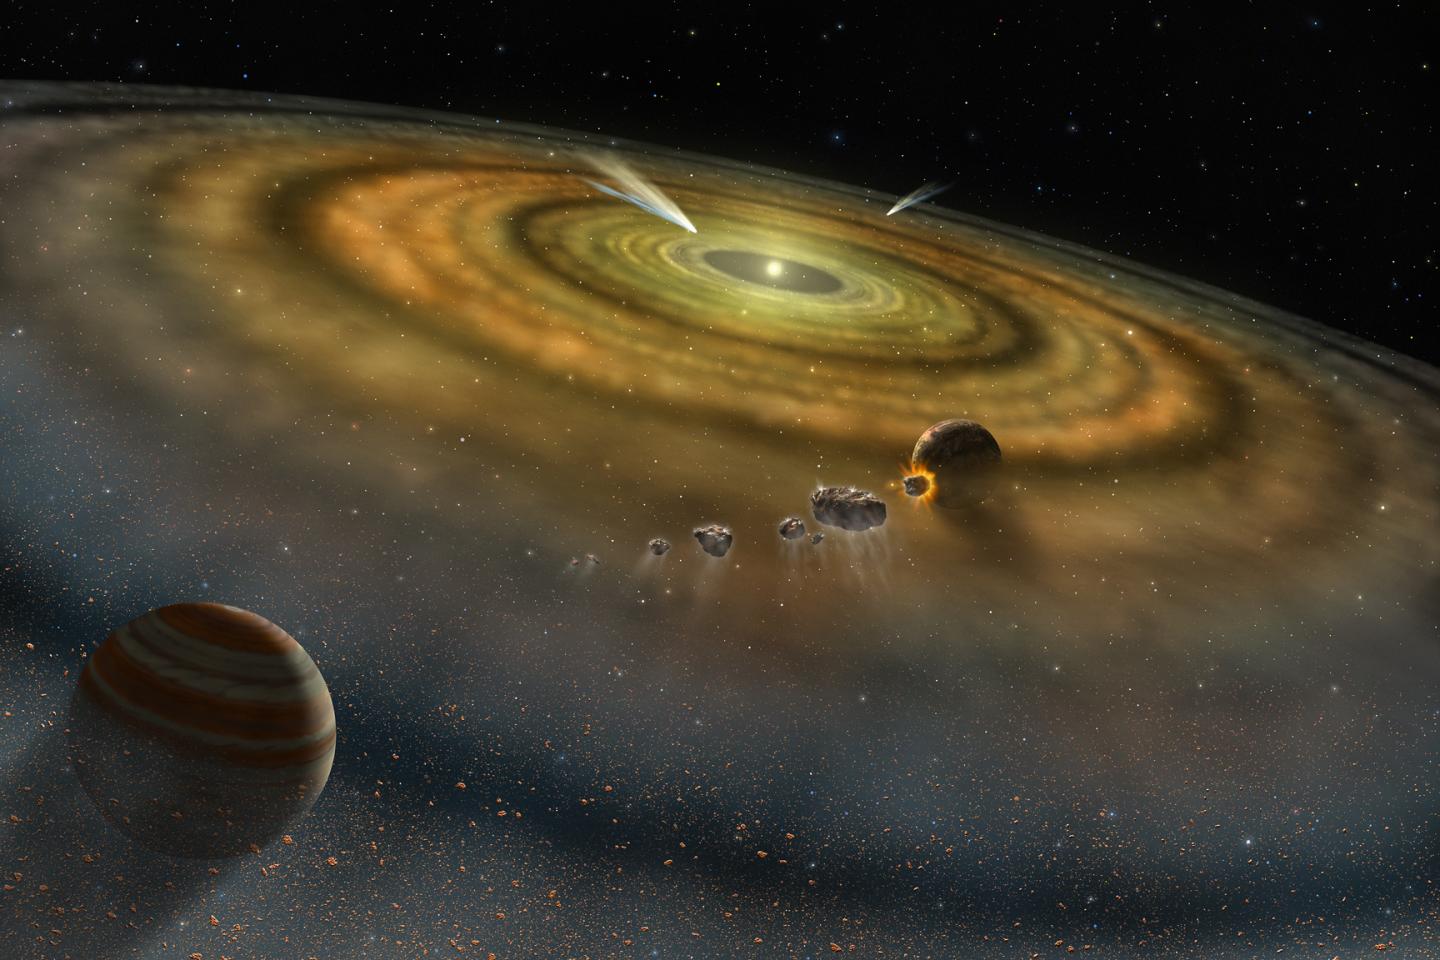 Γιγάντια σύγκρουση αστεροειδών καταγράφηκε σε μακρινό πλανητικό σύστημα